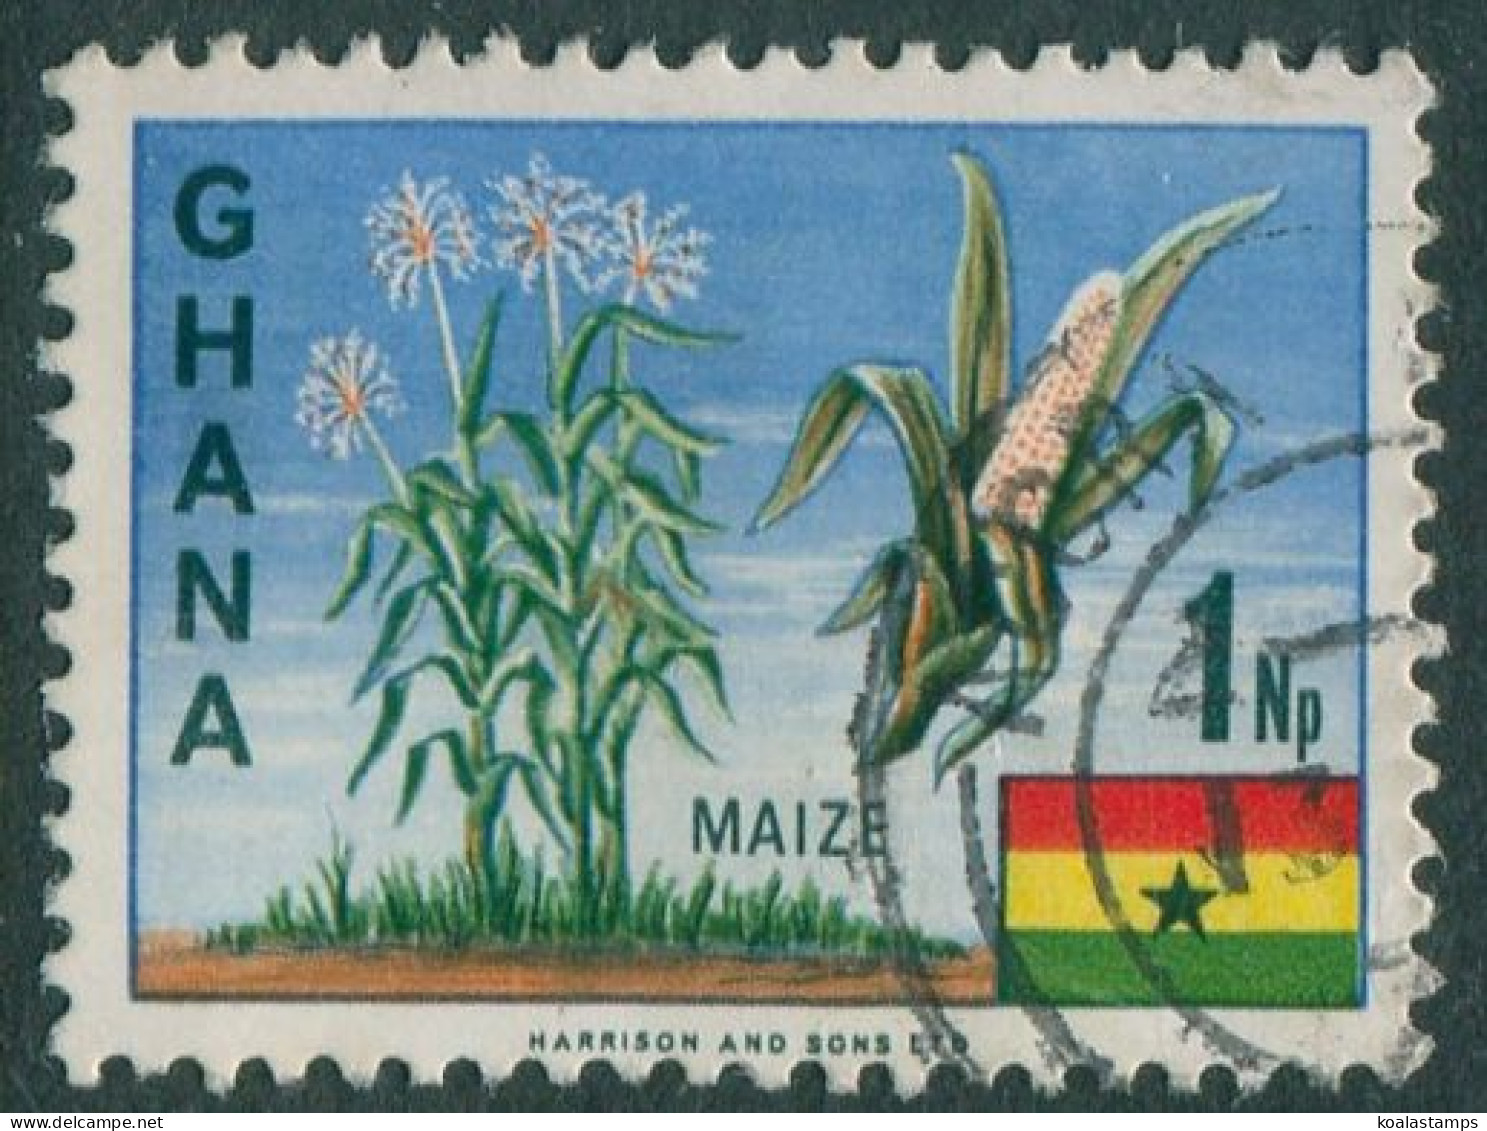 Ghana 1967 SG460 1np Maize FU - Ghana (1957-...)